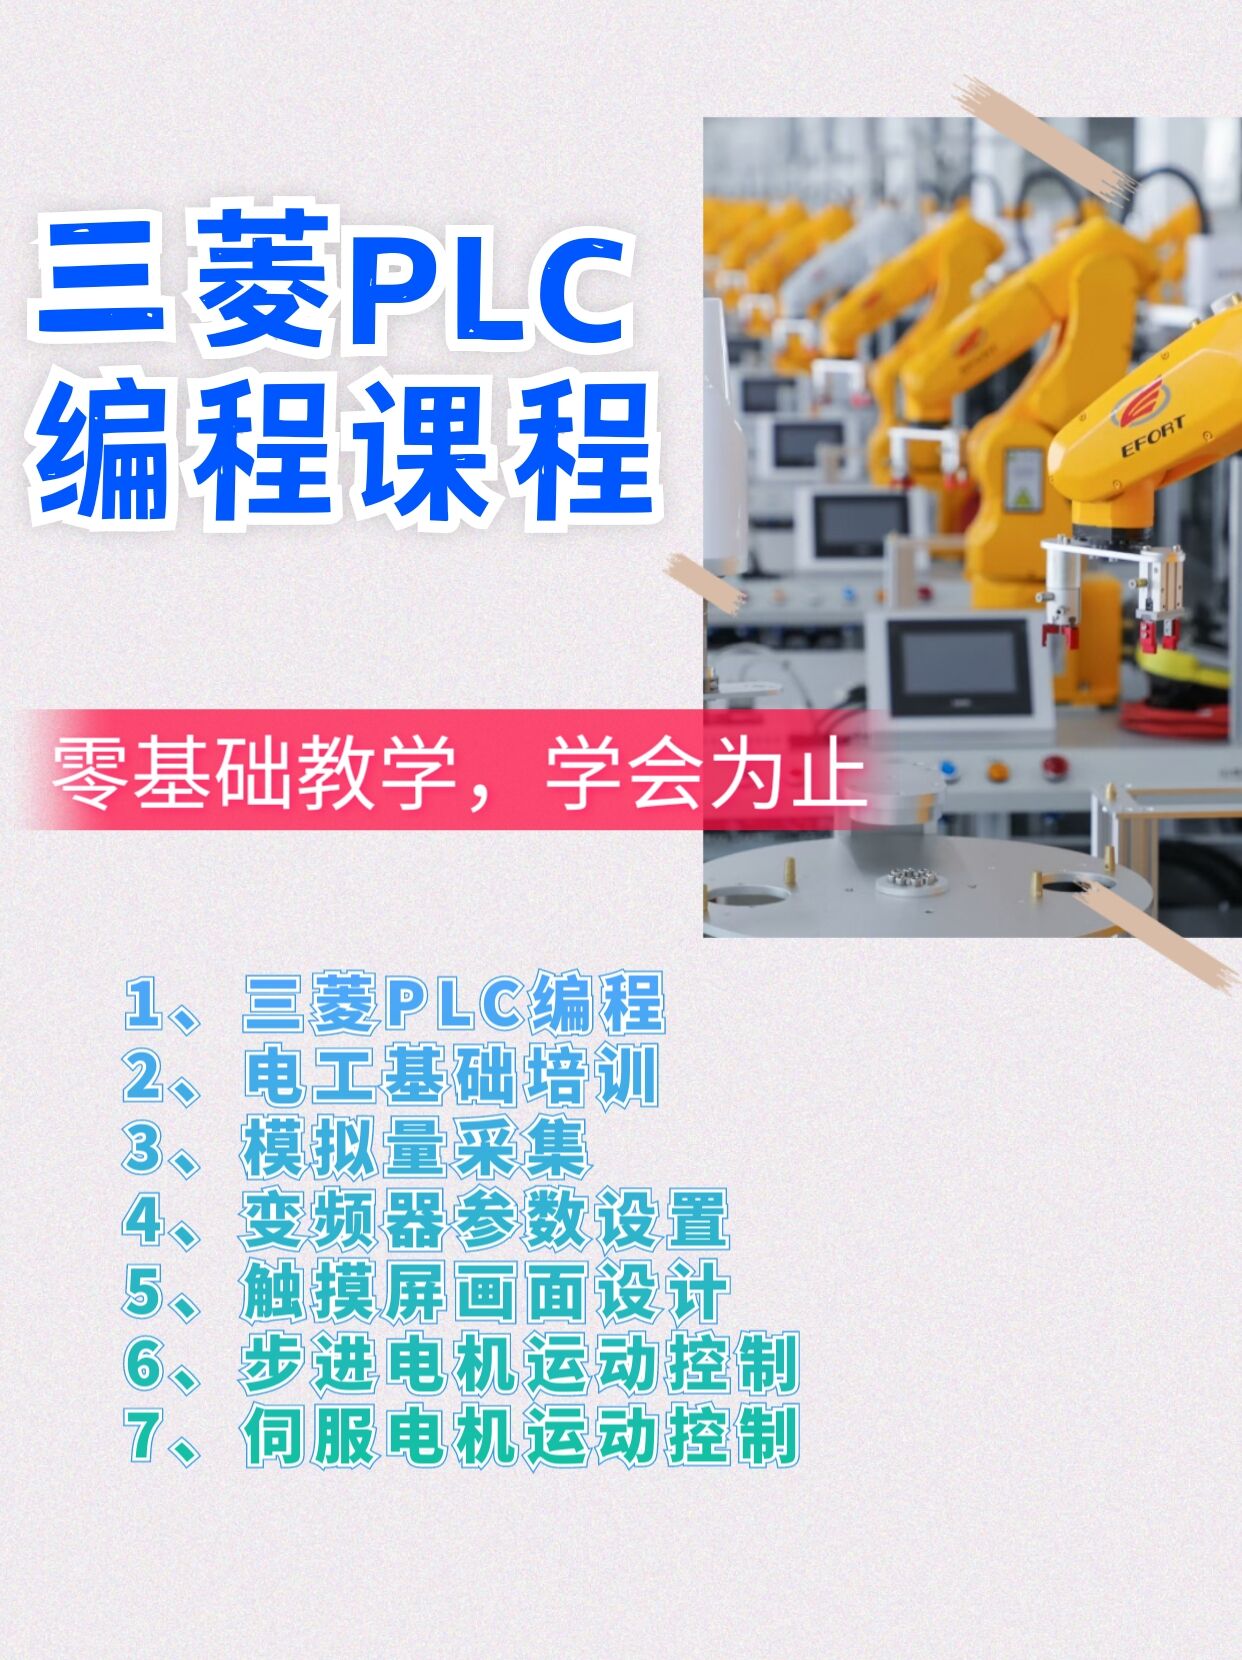 学PLC编程建议学什么牌子好呢漳州PLC编程培训